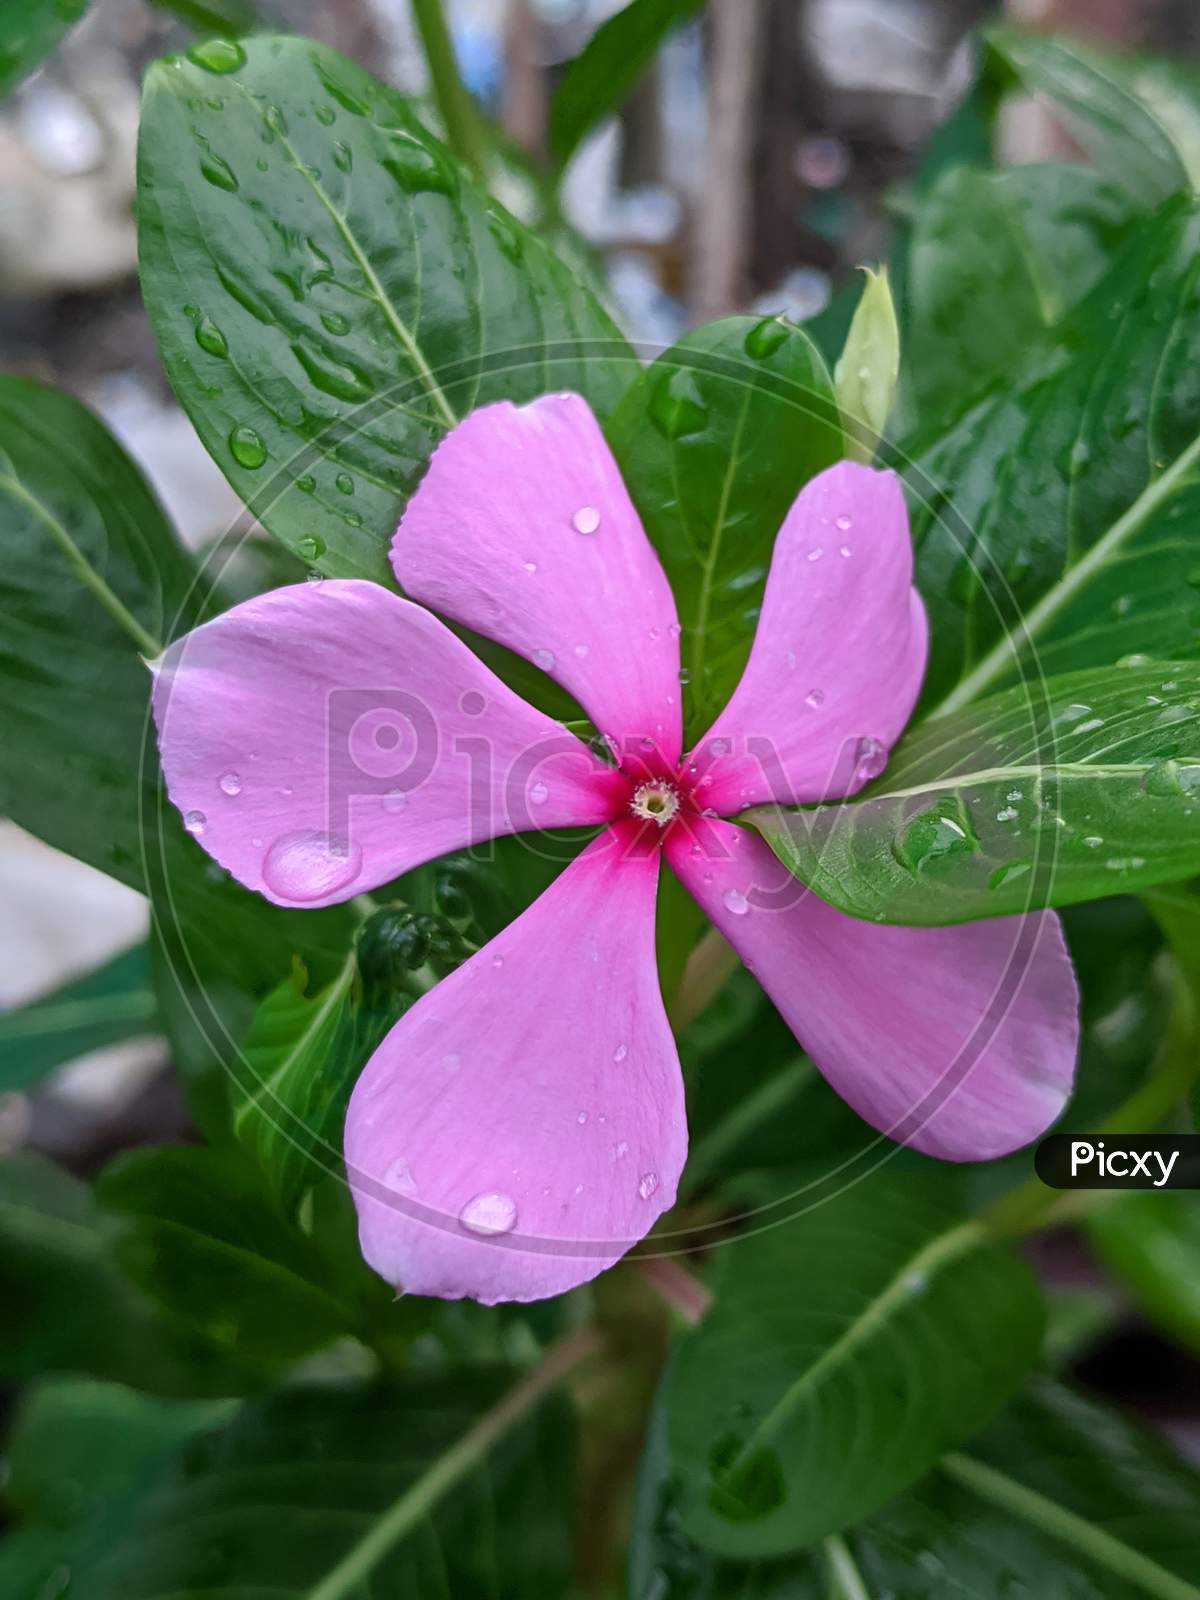 Pink periwinkle Flower,macro